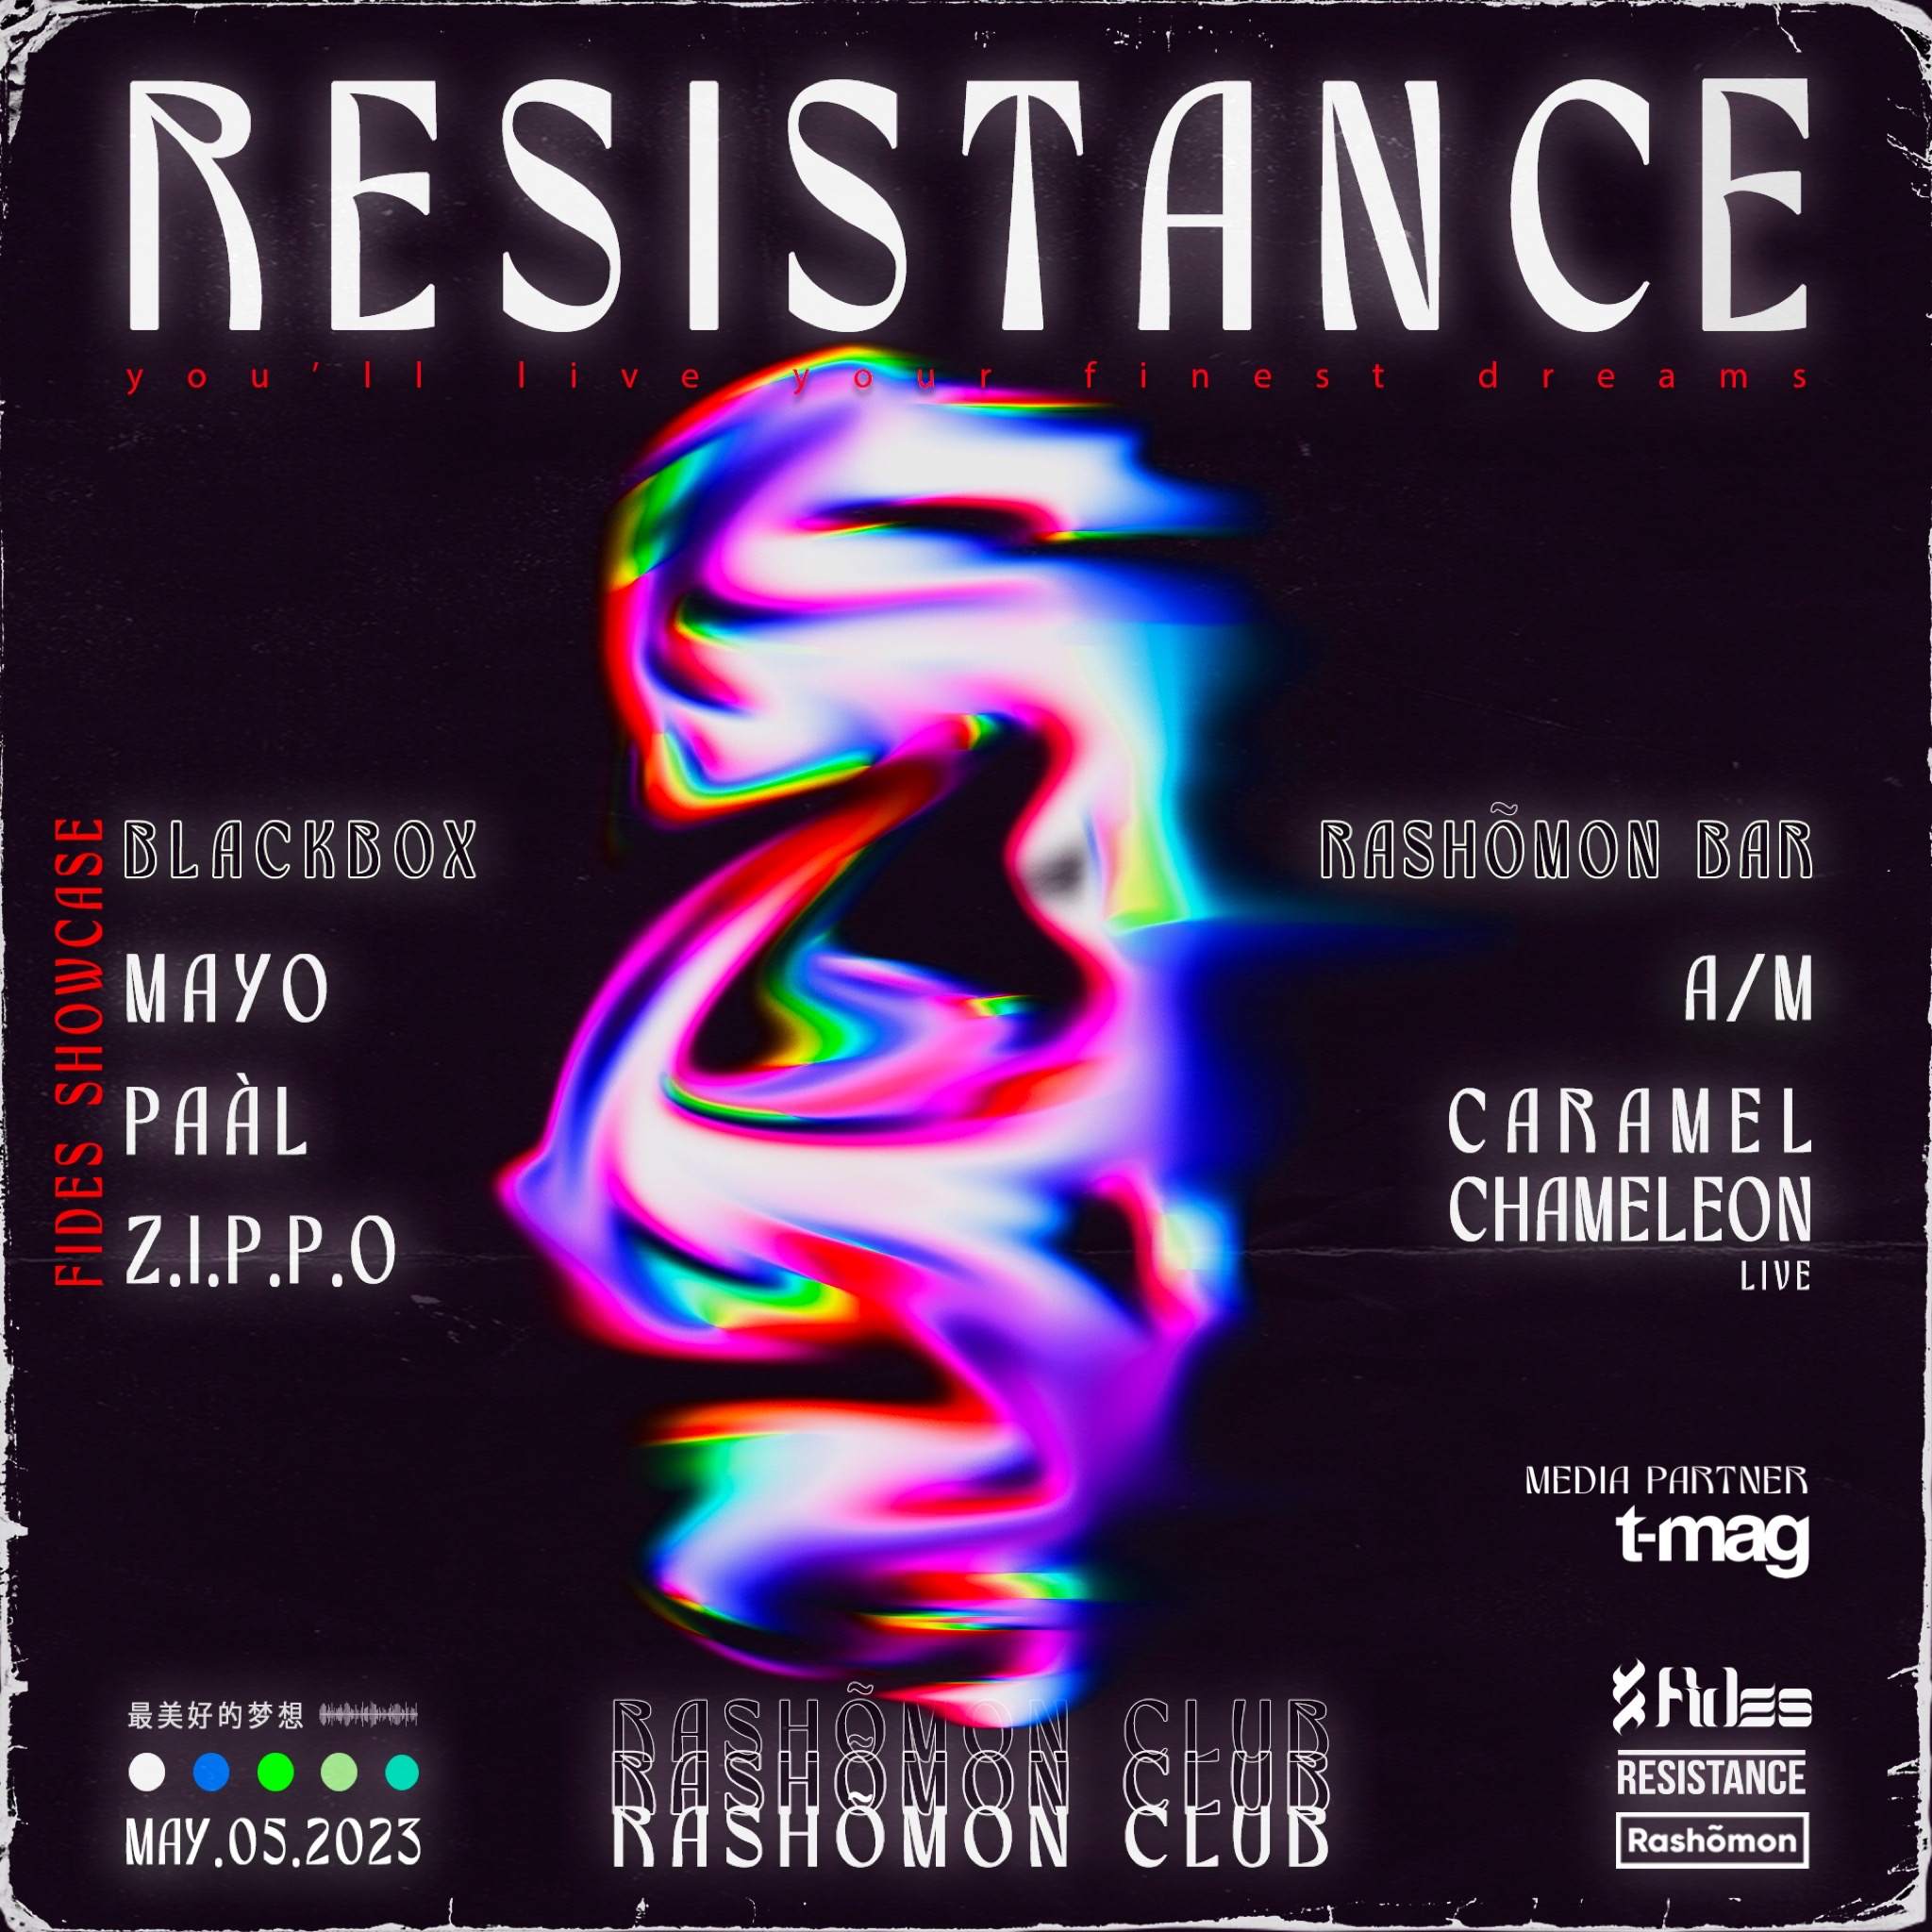 Resistance x Fides: Mayo, Paàl, Z.I.P.P.O, A/M, Caramel Chamaleon live - Página trasera